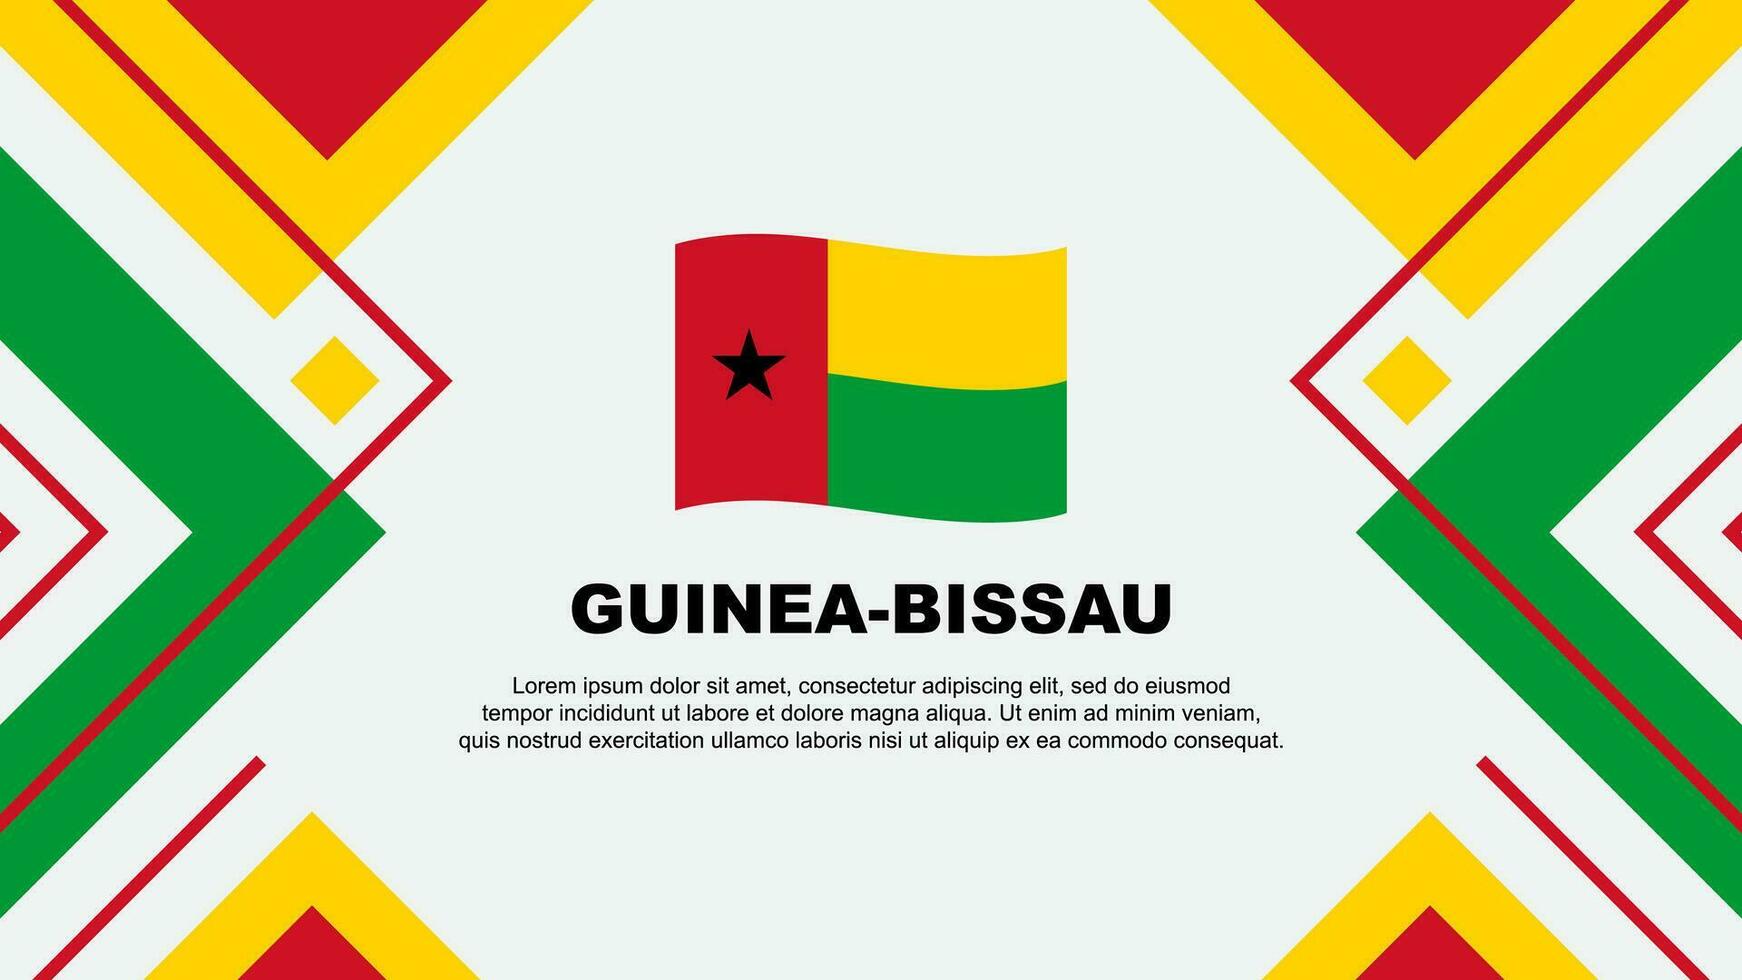 Guinea-Bissau Flag Abstract Background Design Template. Guinea-Bissau Independence Day Banner Wallpaper Vector Illustration. Guinea-Bissau Illustration